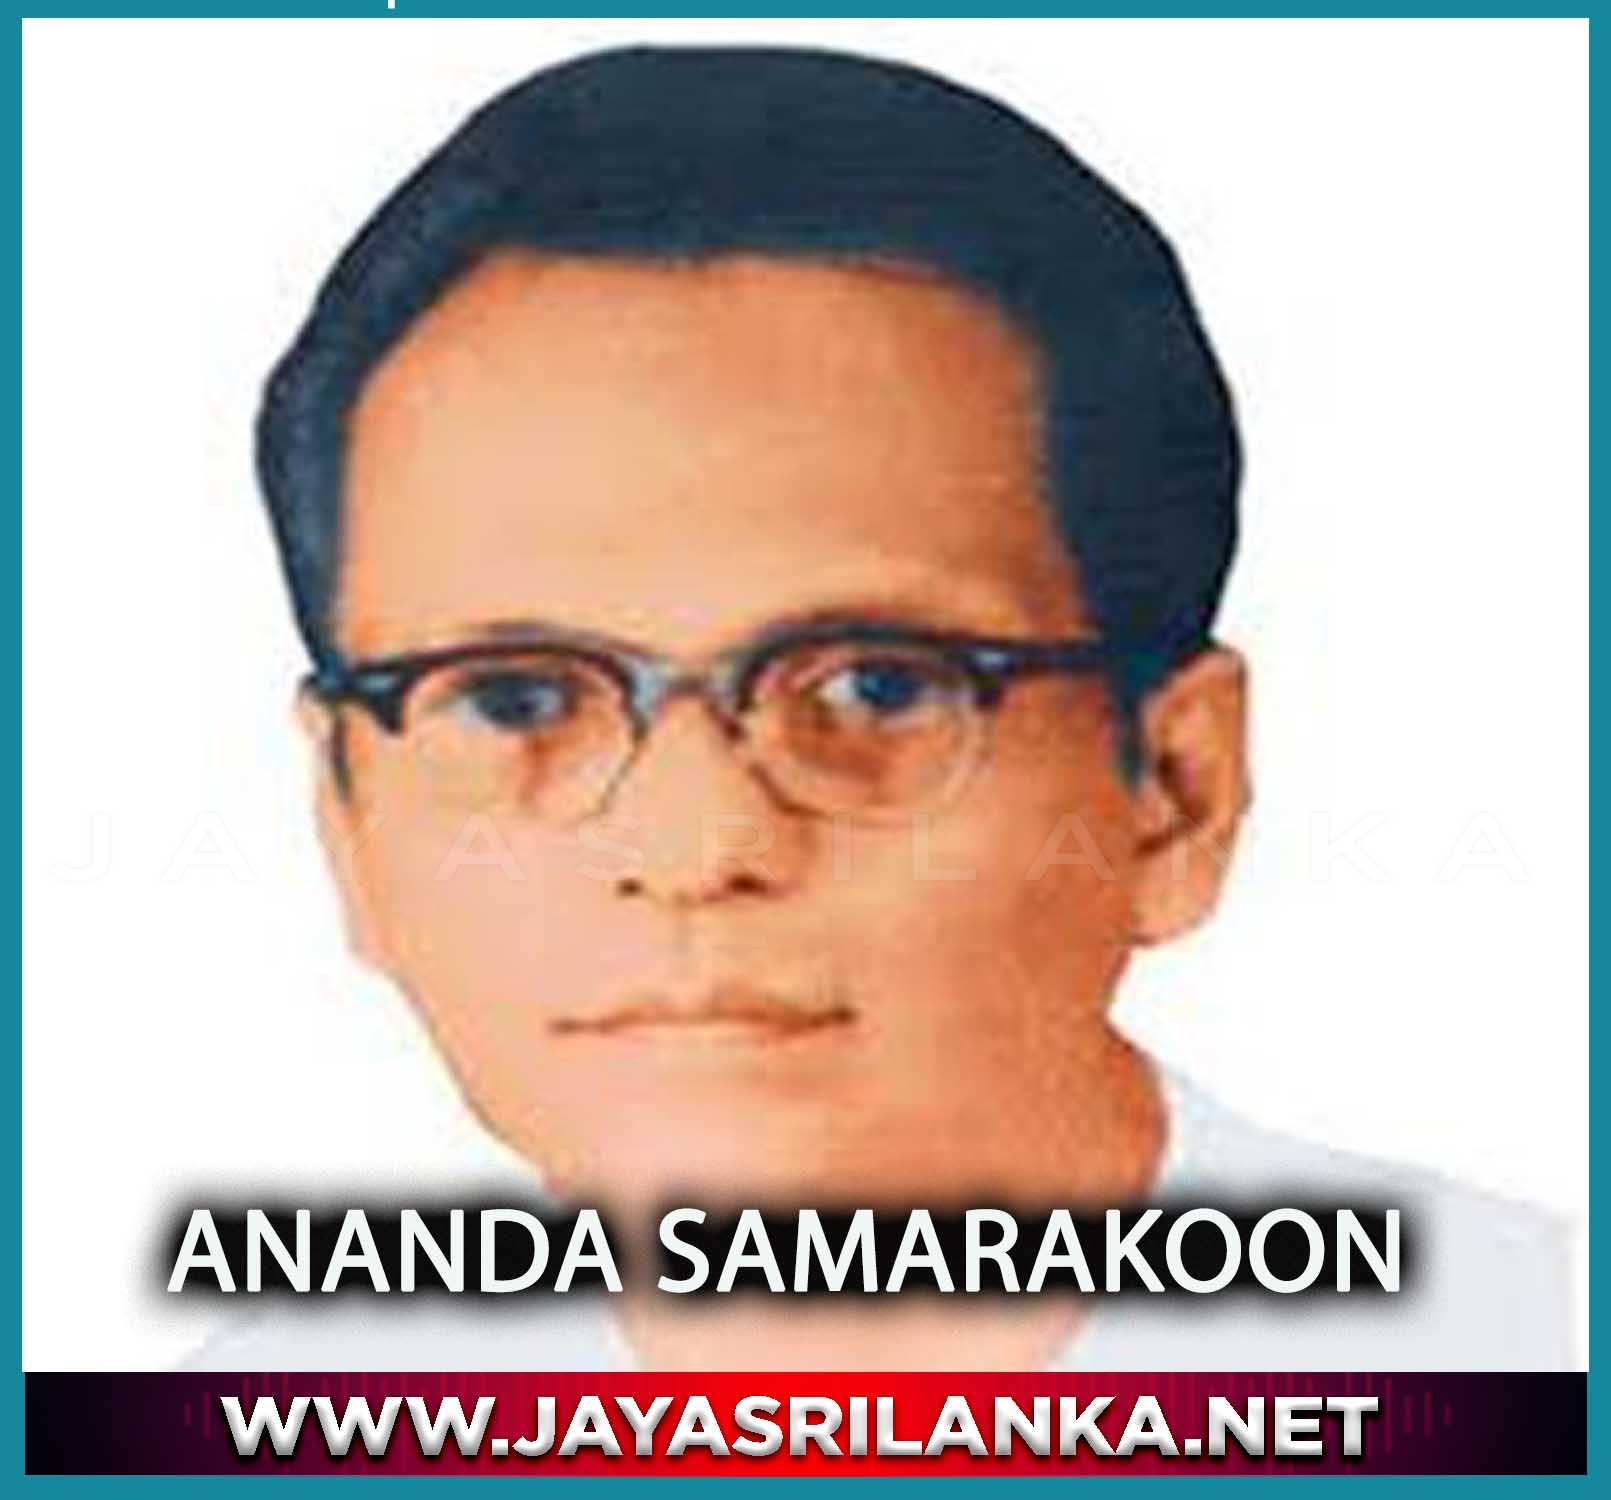 Manaranjana Darshaniya Lanka - Ananda Samarakoon mp3 Image